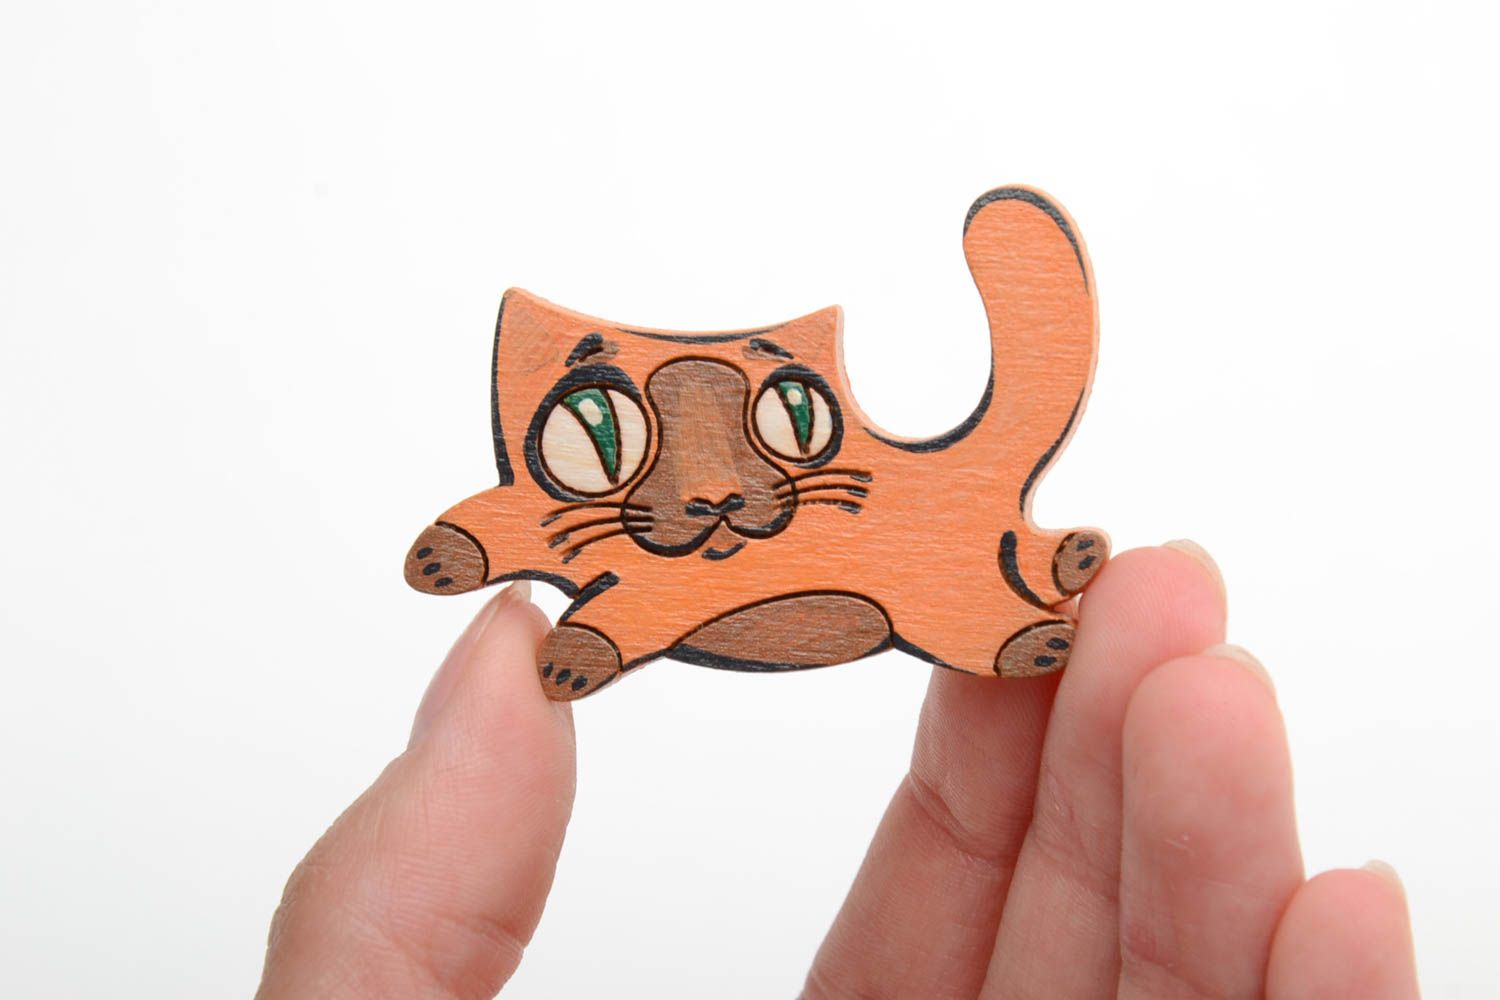 Фанерная брошка небольшая в виде кота рыжая красивая смешная ручной работы фото 2